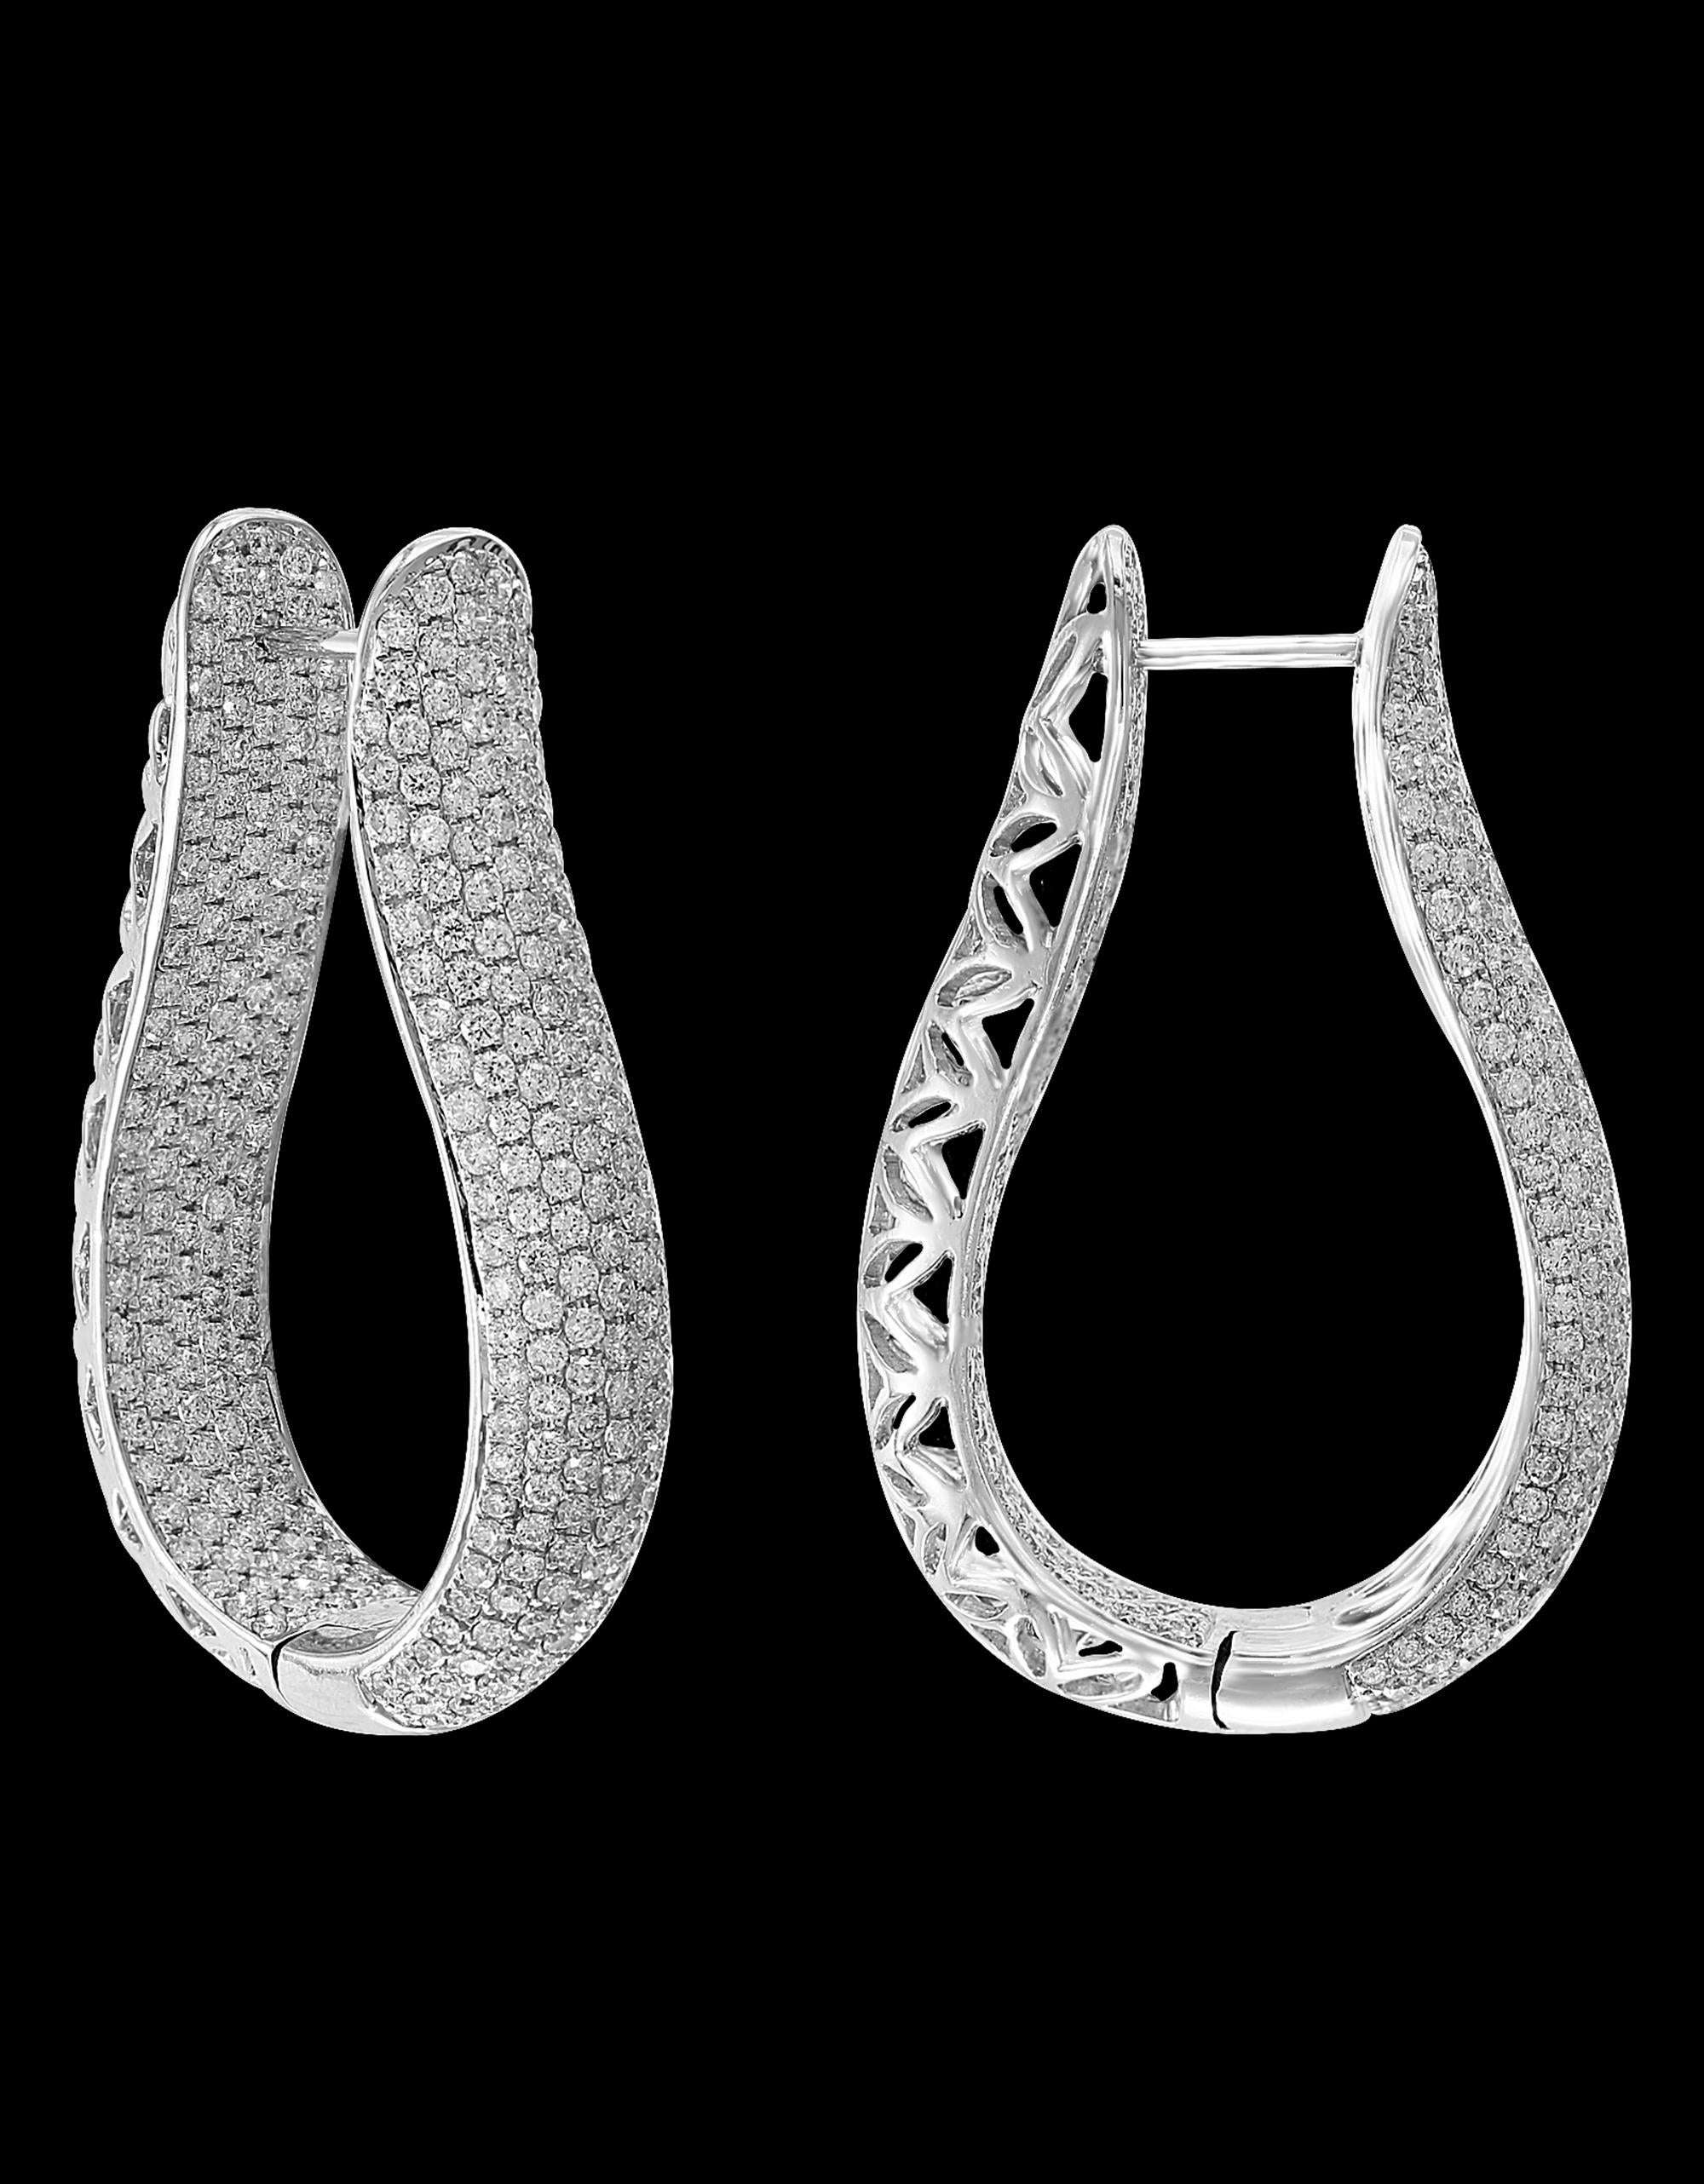 Ein fabelhaftes Paar Ohrringe mit einer enormen Menge an Aussehen und Funkeln!
Dieses exquisite Paar Ohrringe zeichnet sich durch runde Mikropave  diamanten, die ohne Zacken gefasst sind, mit einem Gesamtgewicht von etwa 8 Karat gefasst  in  18